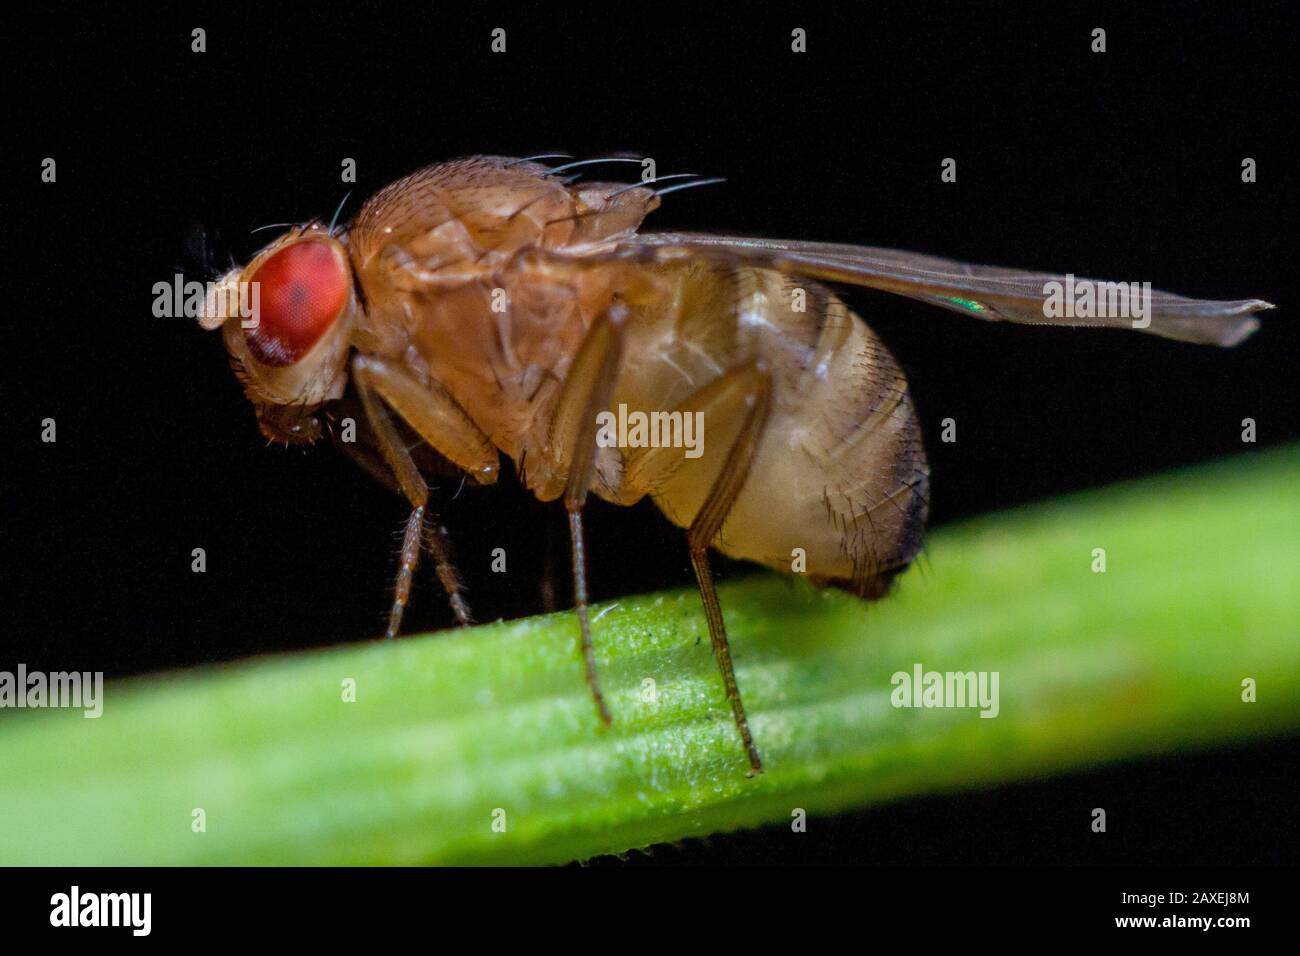 Gros plan détaillé d'une mouche des fruits (drosophidae) sur une tige de plante Banque D'Images